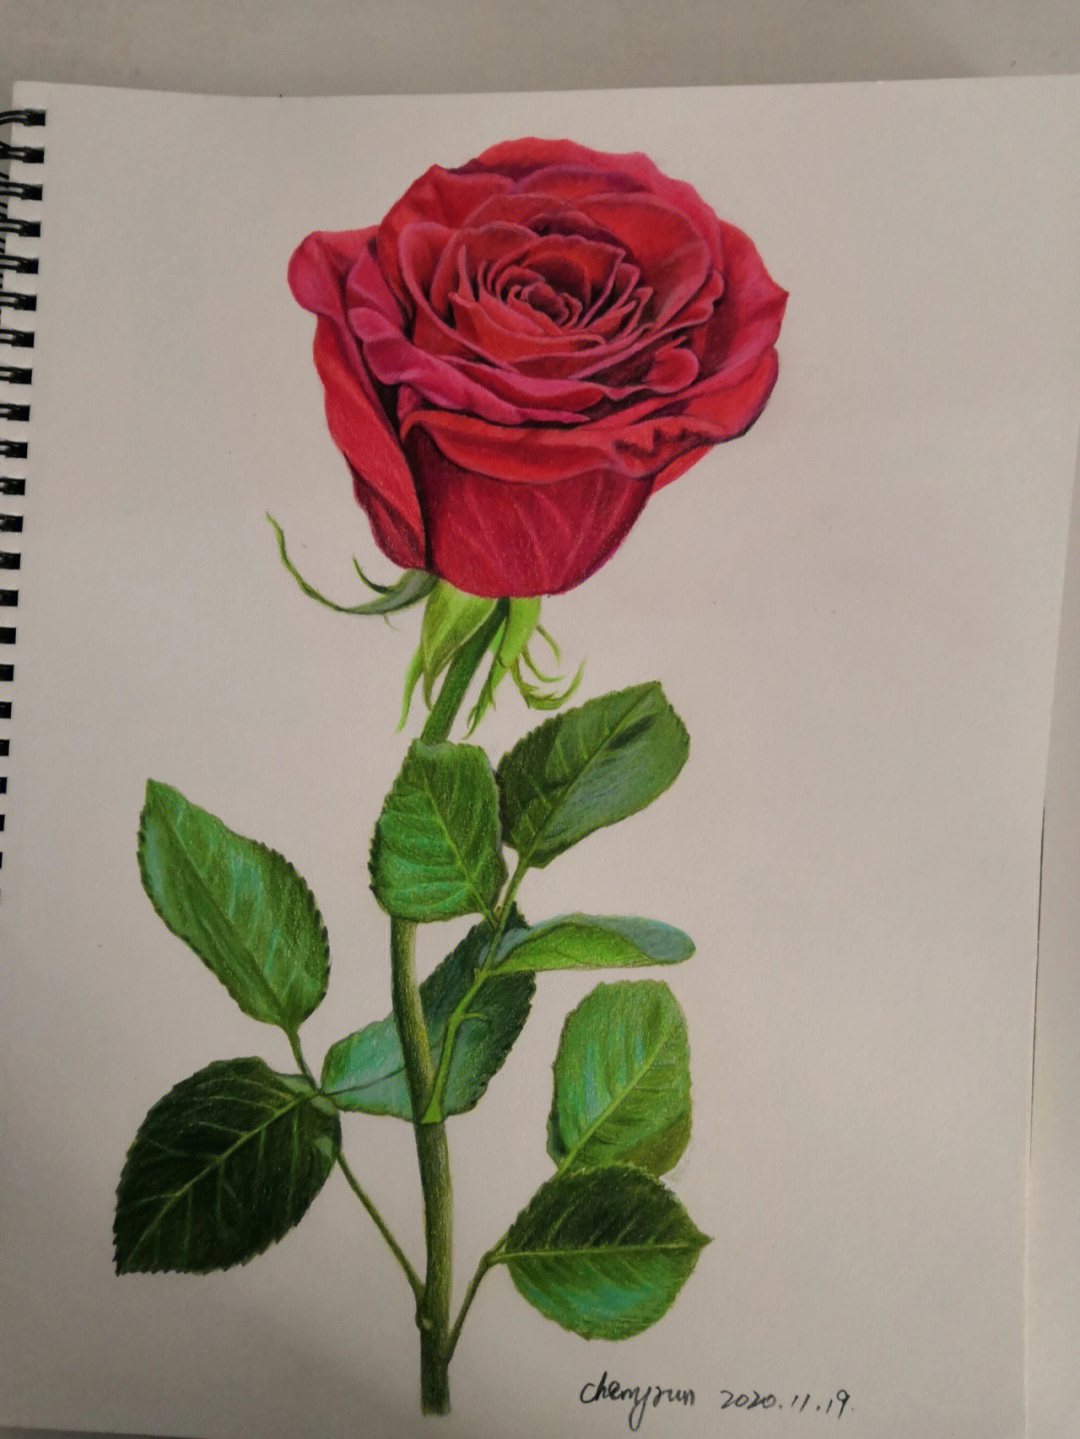 曾经画的一朵玫瑰花,祝我们的生活在风雨过后都是坦途,学习工作只有